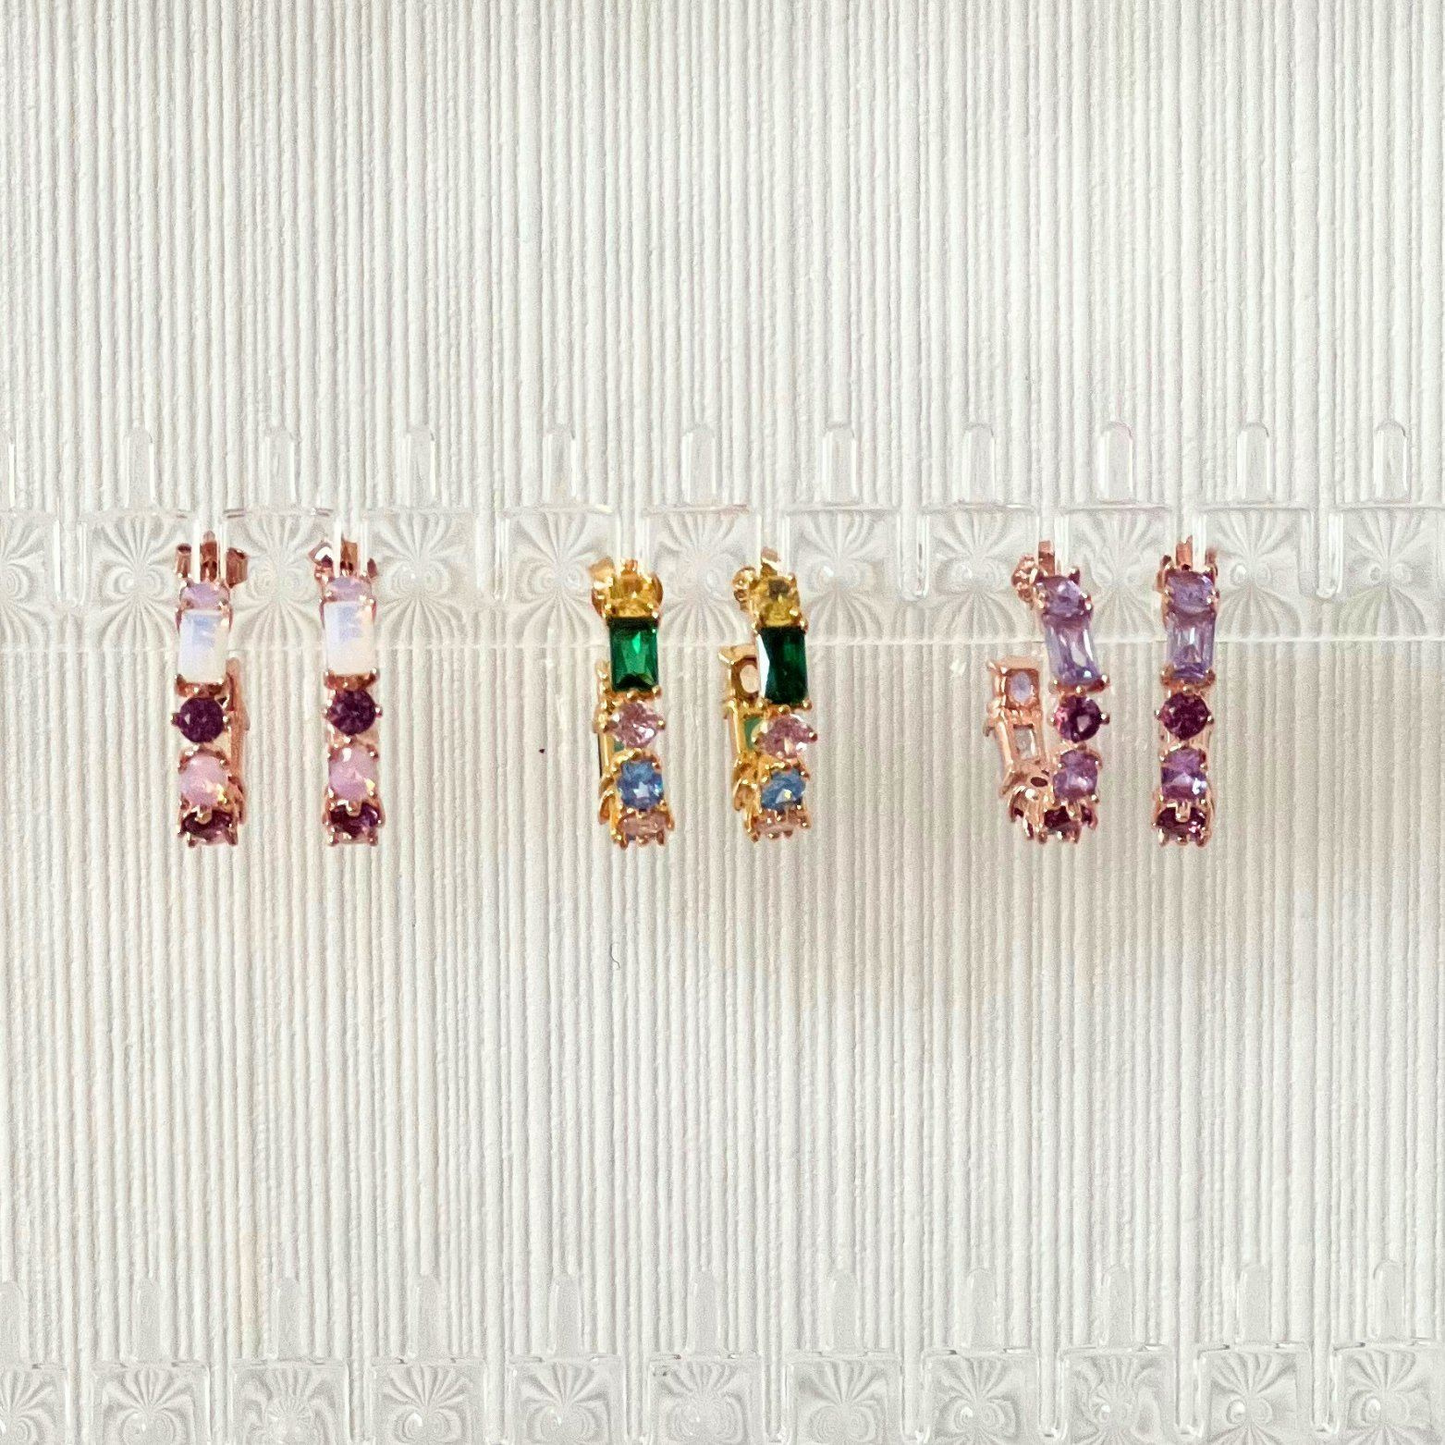 Wang-bi 18k Rose Gold Vermeil Earrings with two other earrings- KORYANGS Brand